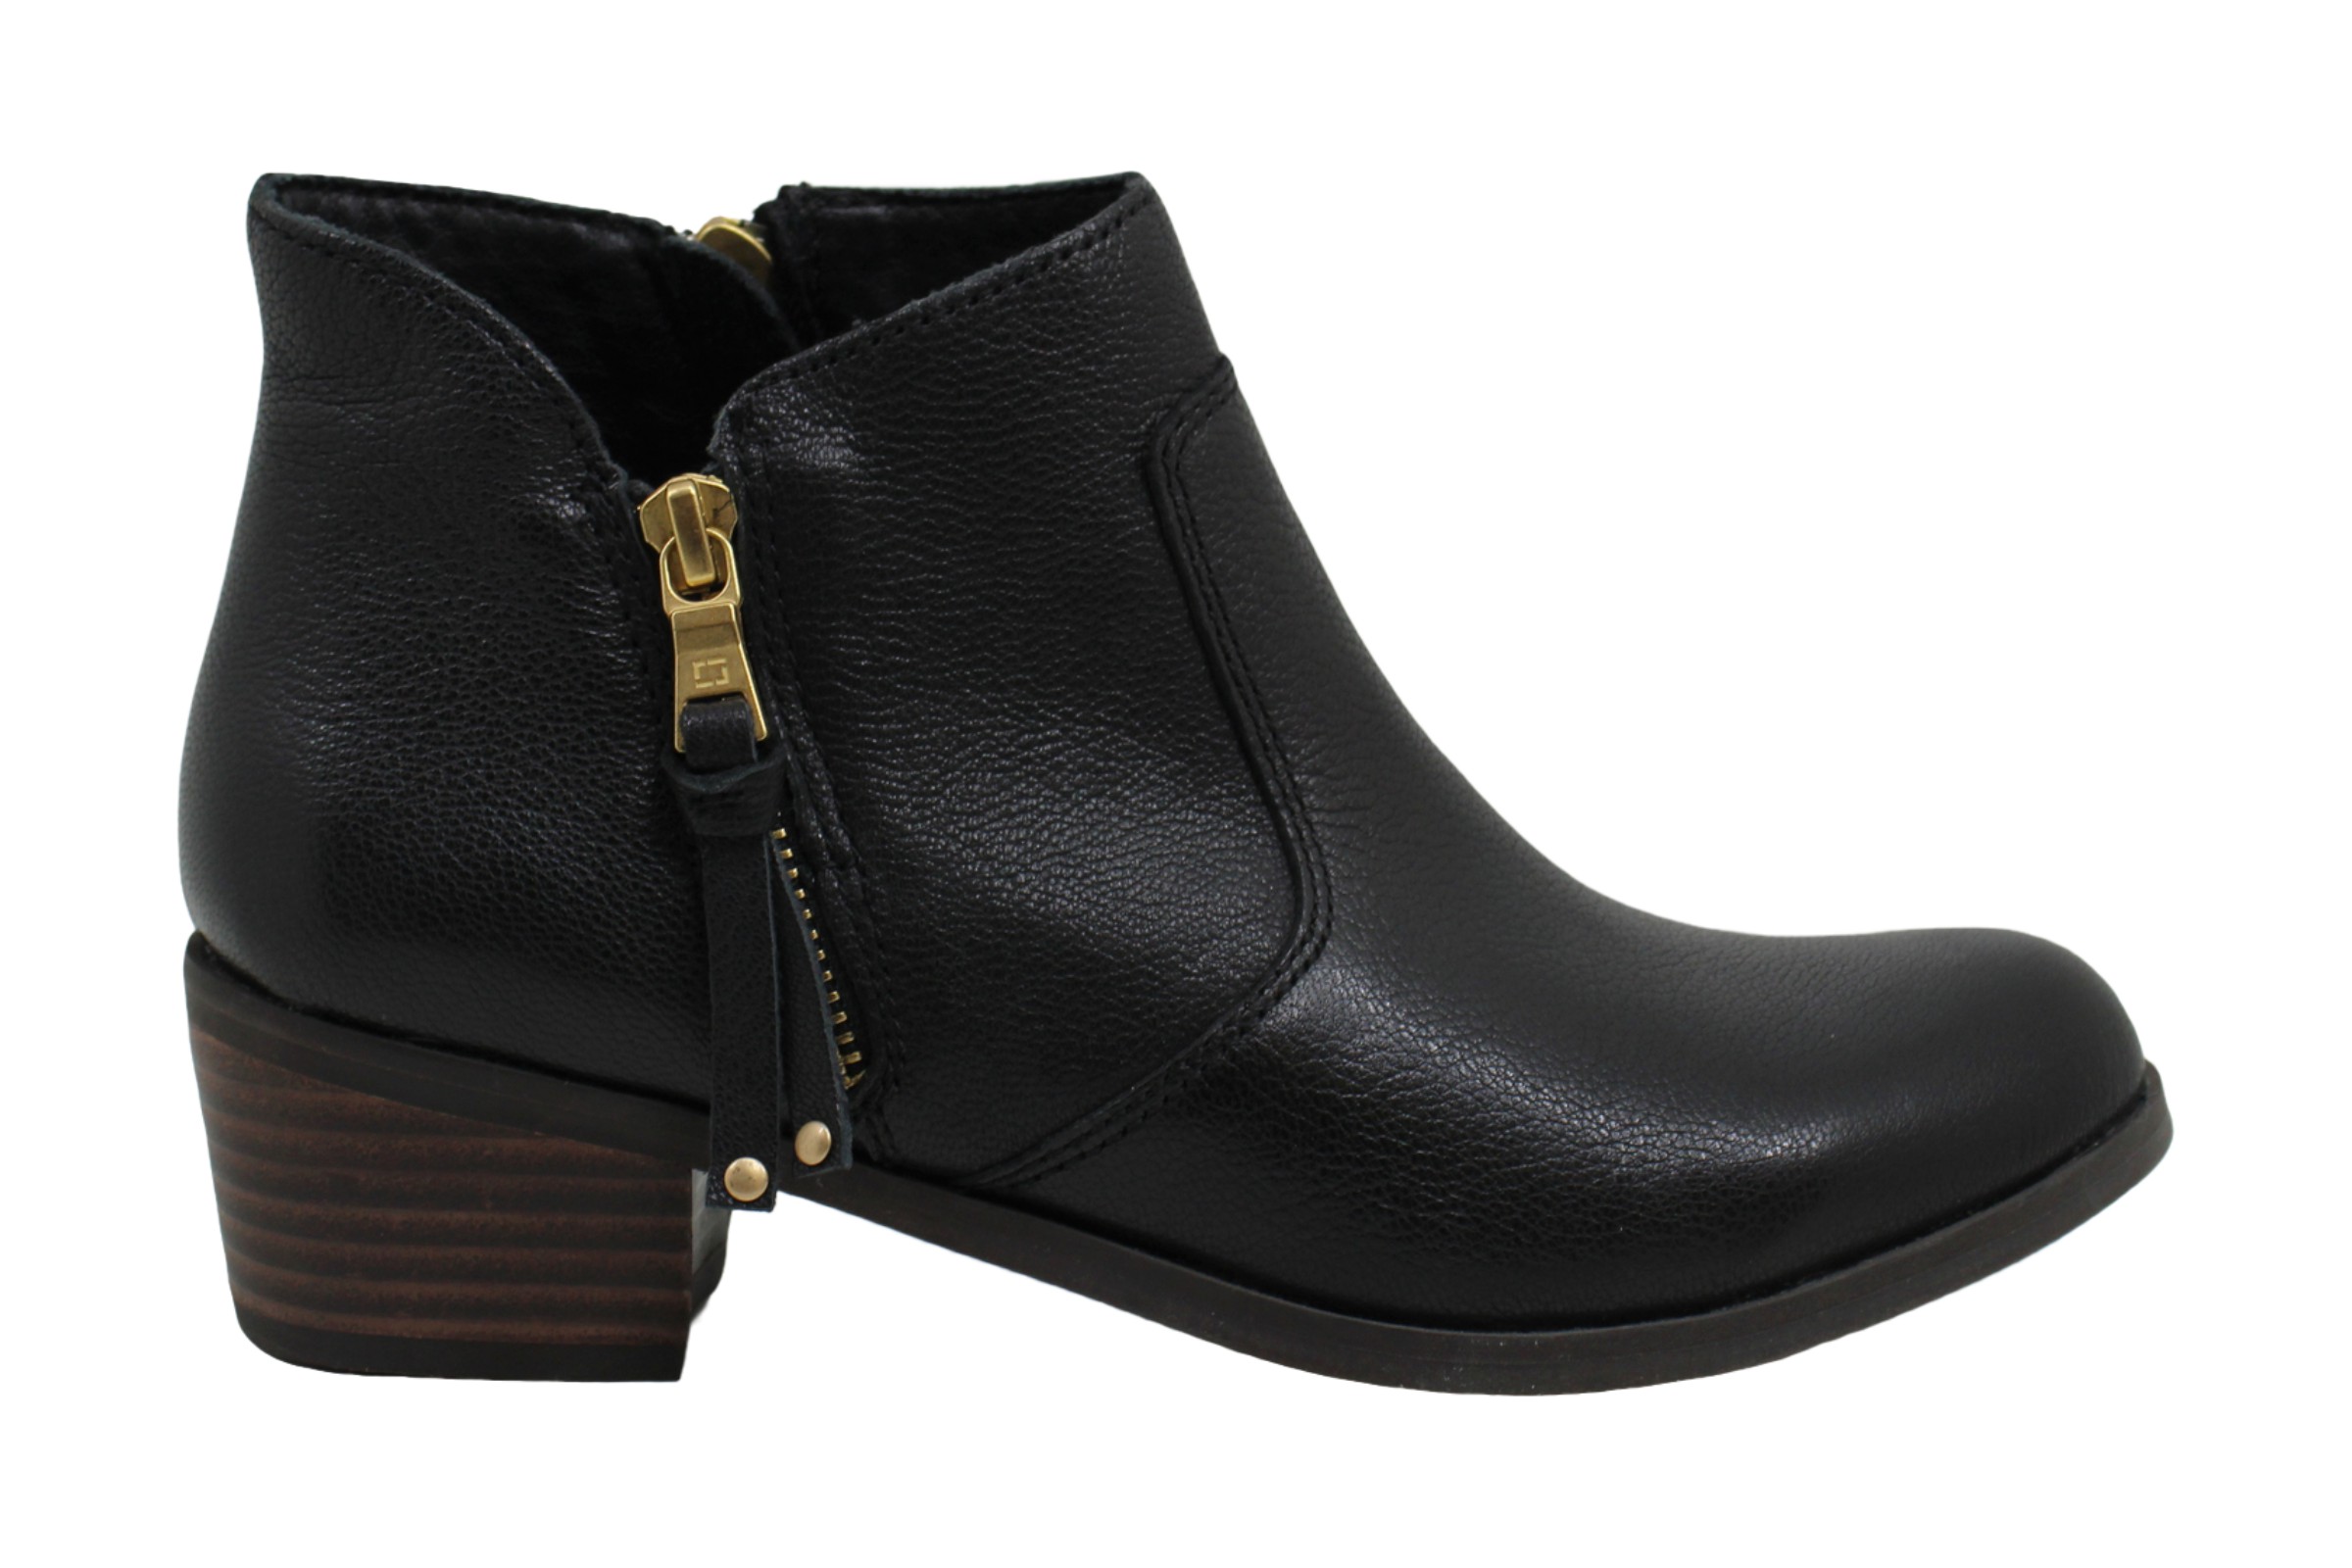 Baretraps Uriel Ankle Booties Women's Shoes, Black, Size 5.0 LFI5 | eBay